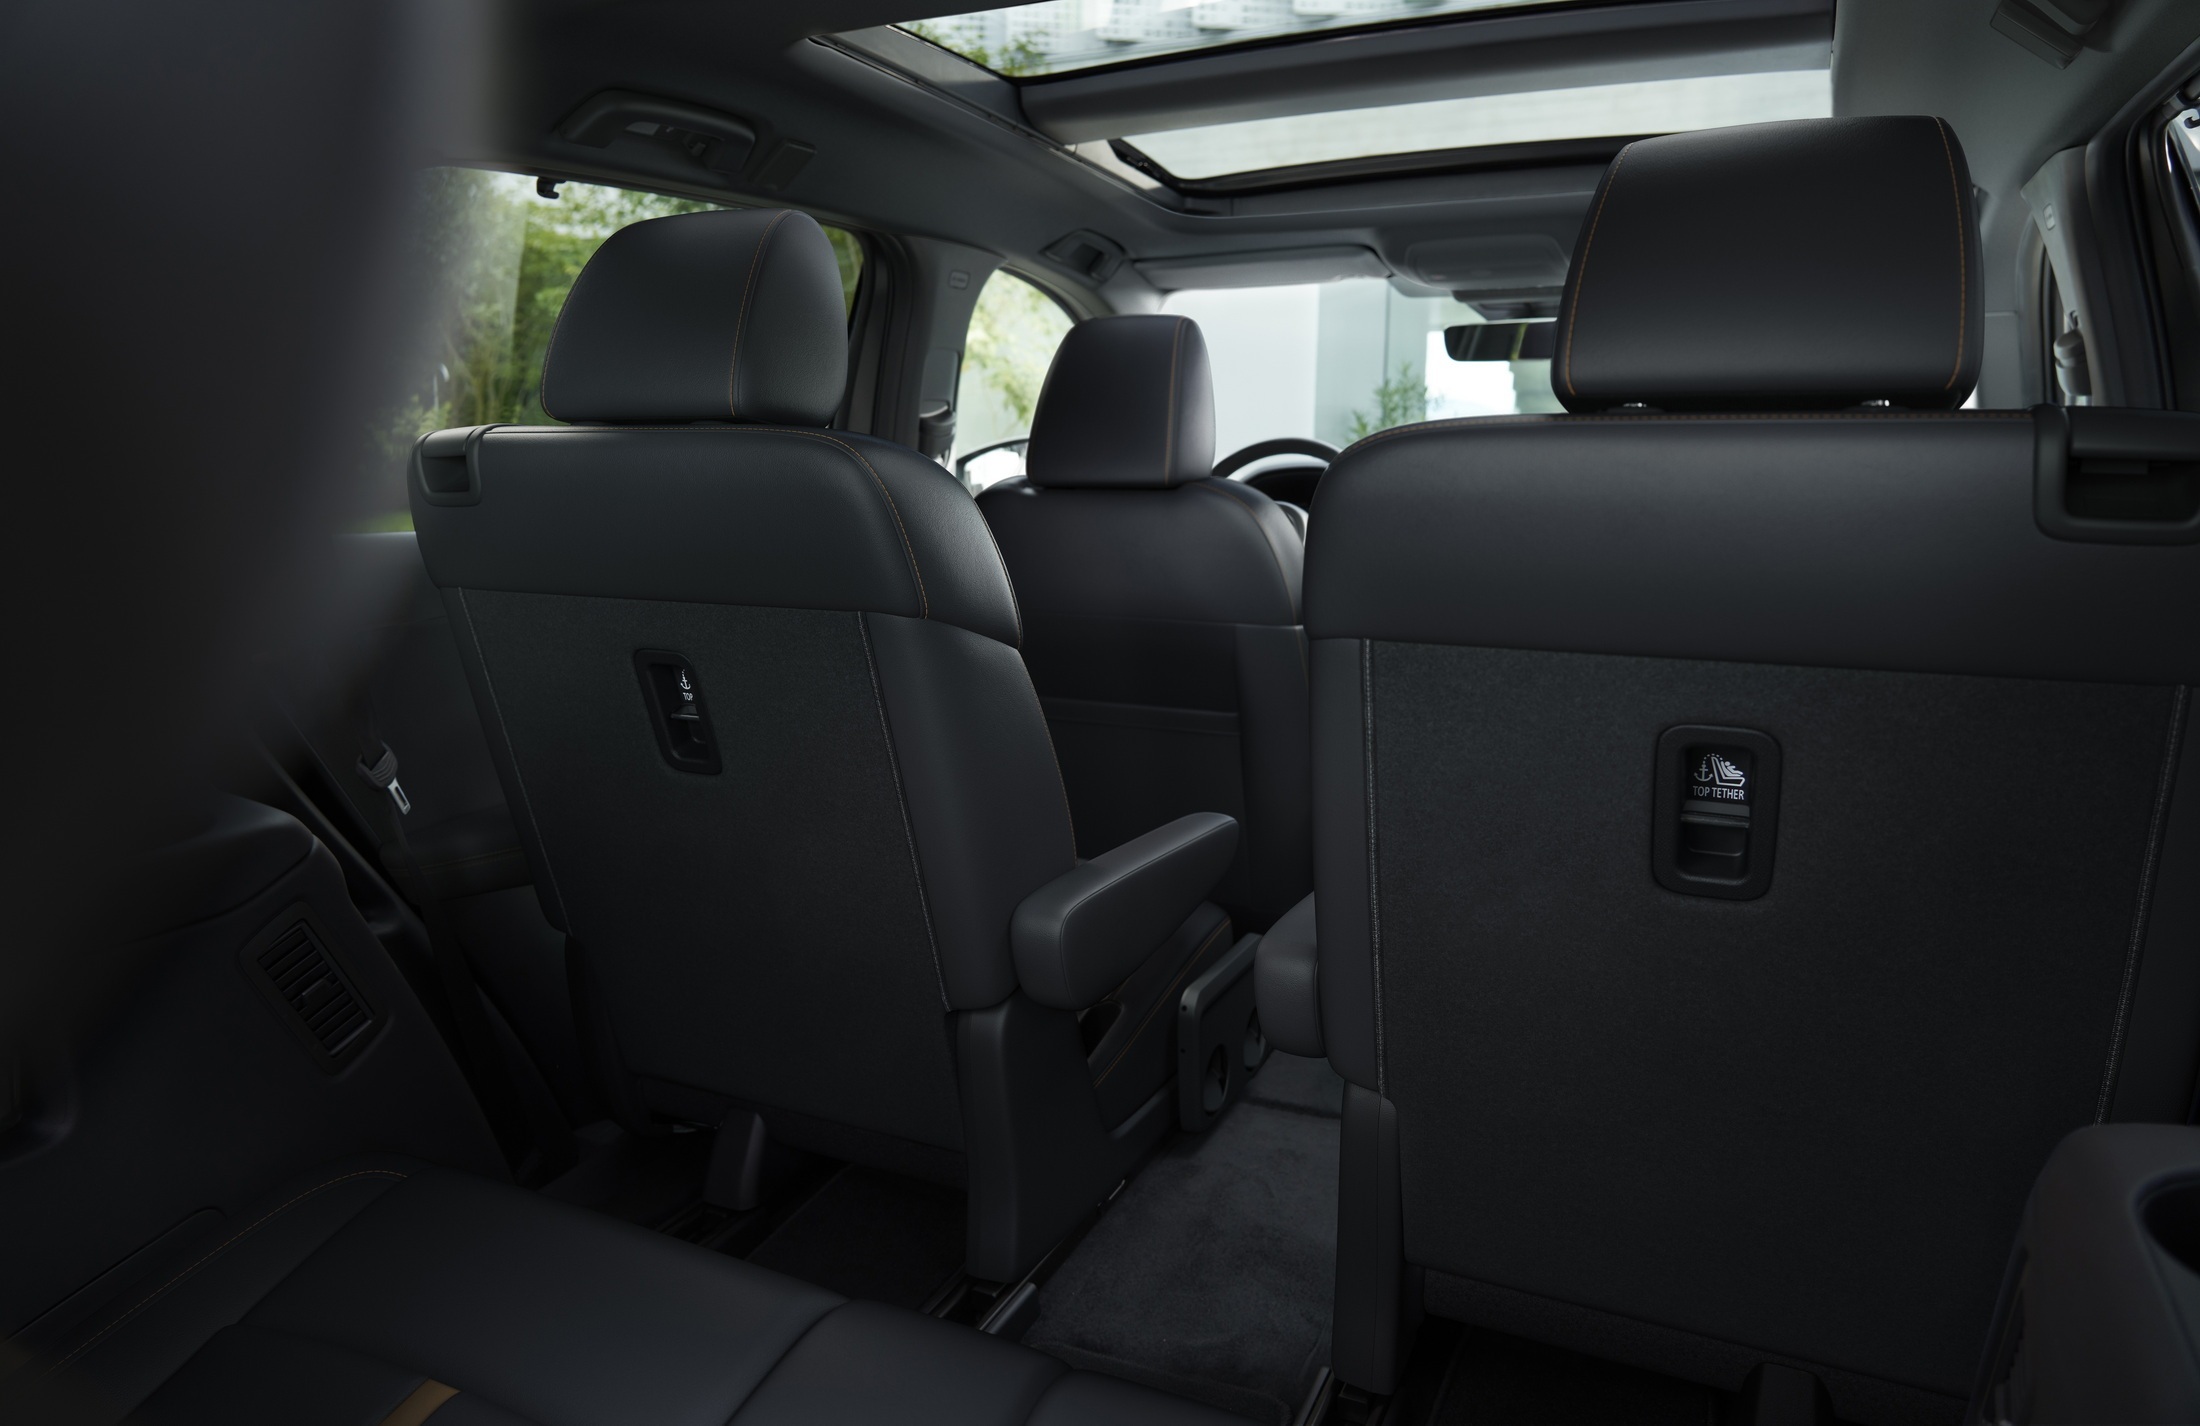 View - Tân binh Mazda CX-80 ra mắt: 3 hàng ghế, chỉ có trang bị động cơ hybrid | Báo Dân trí